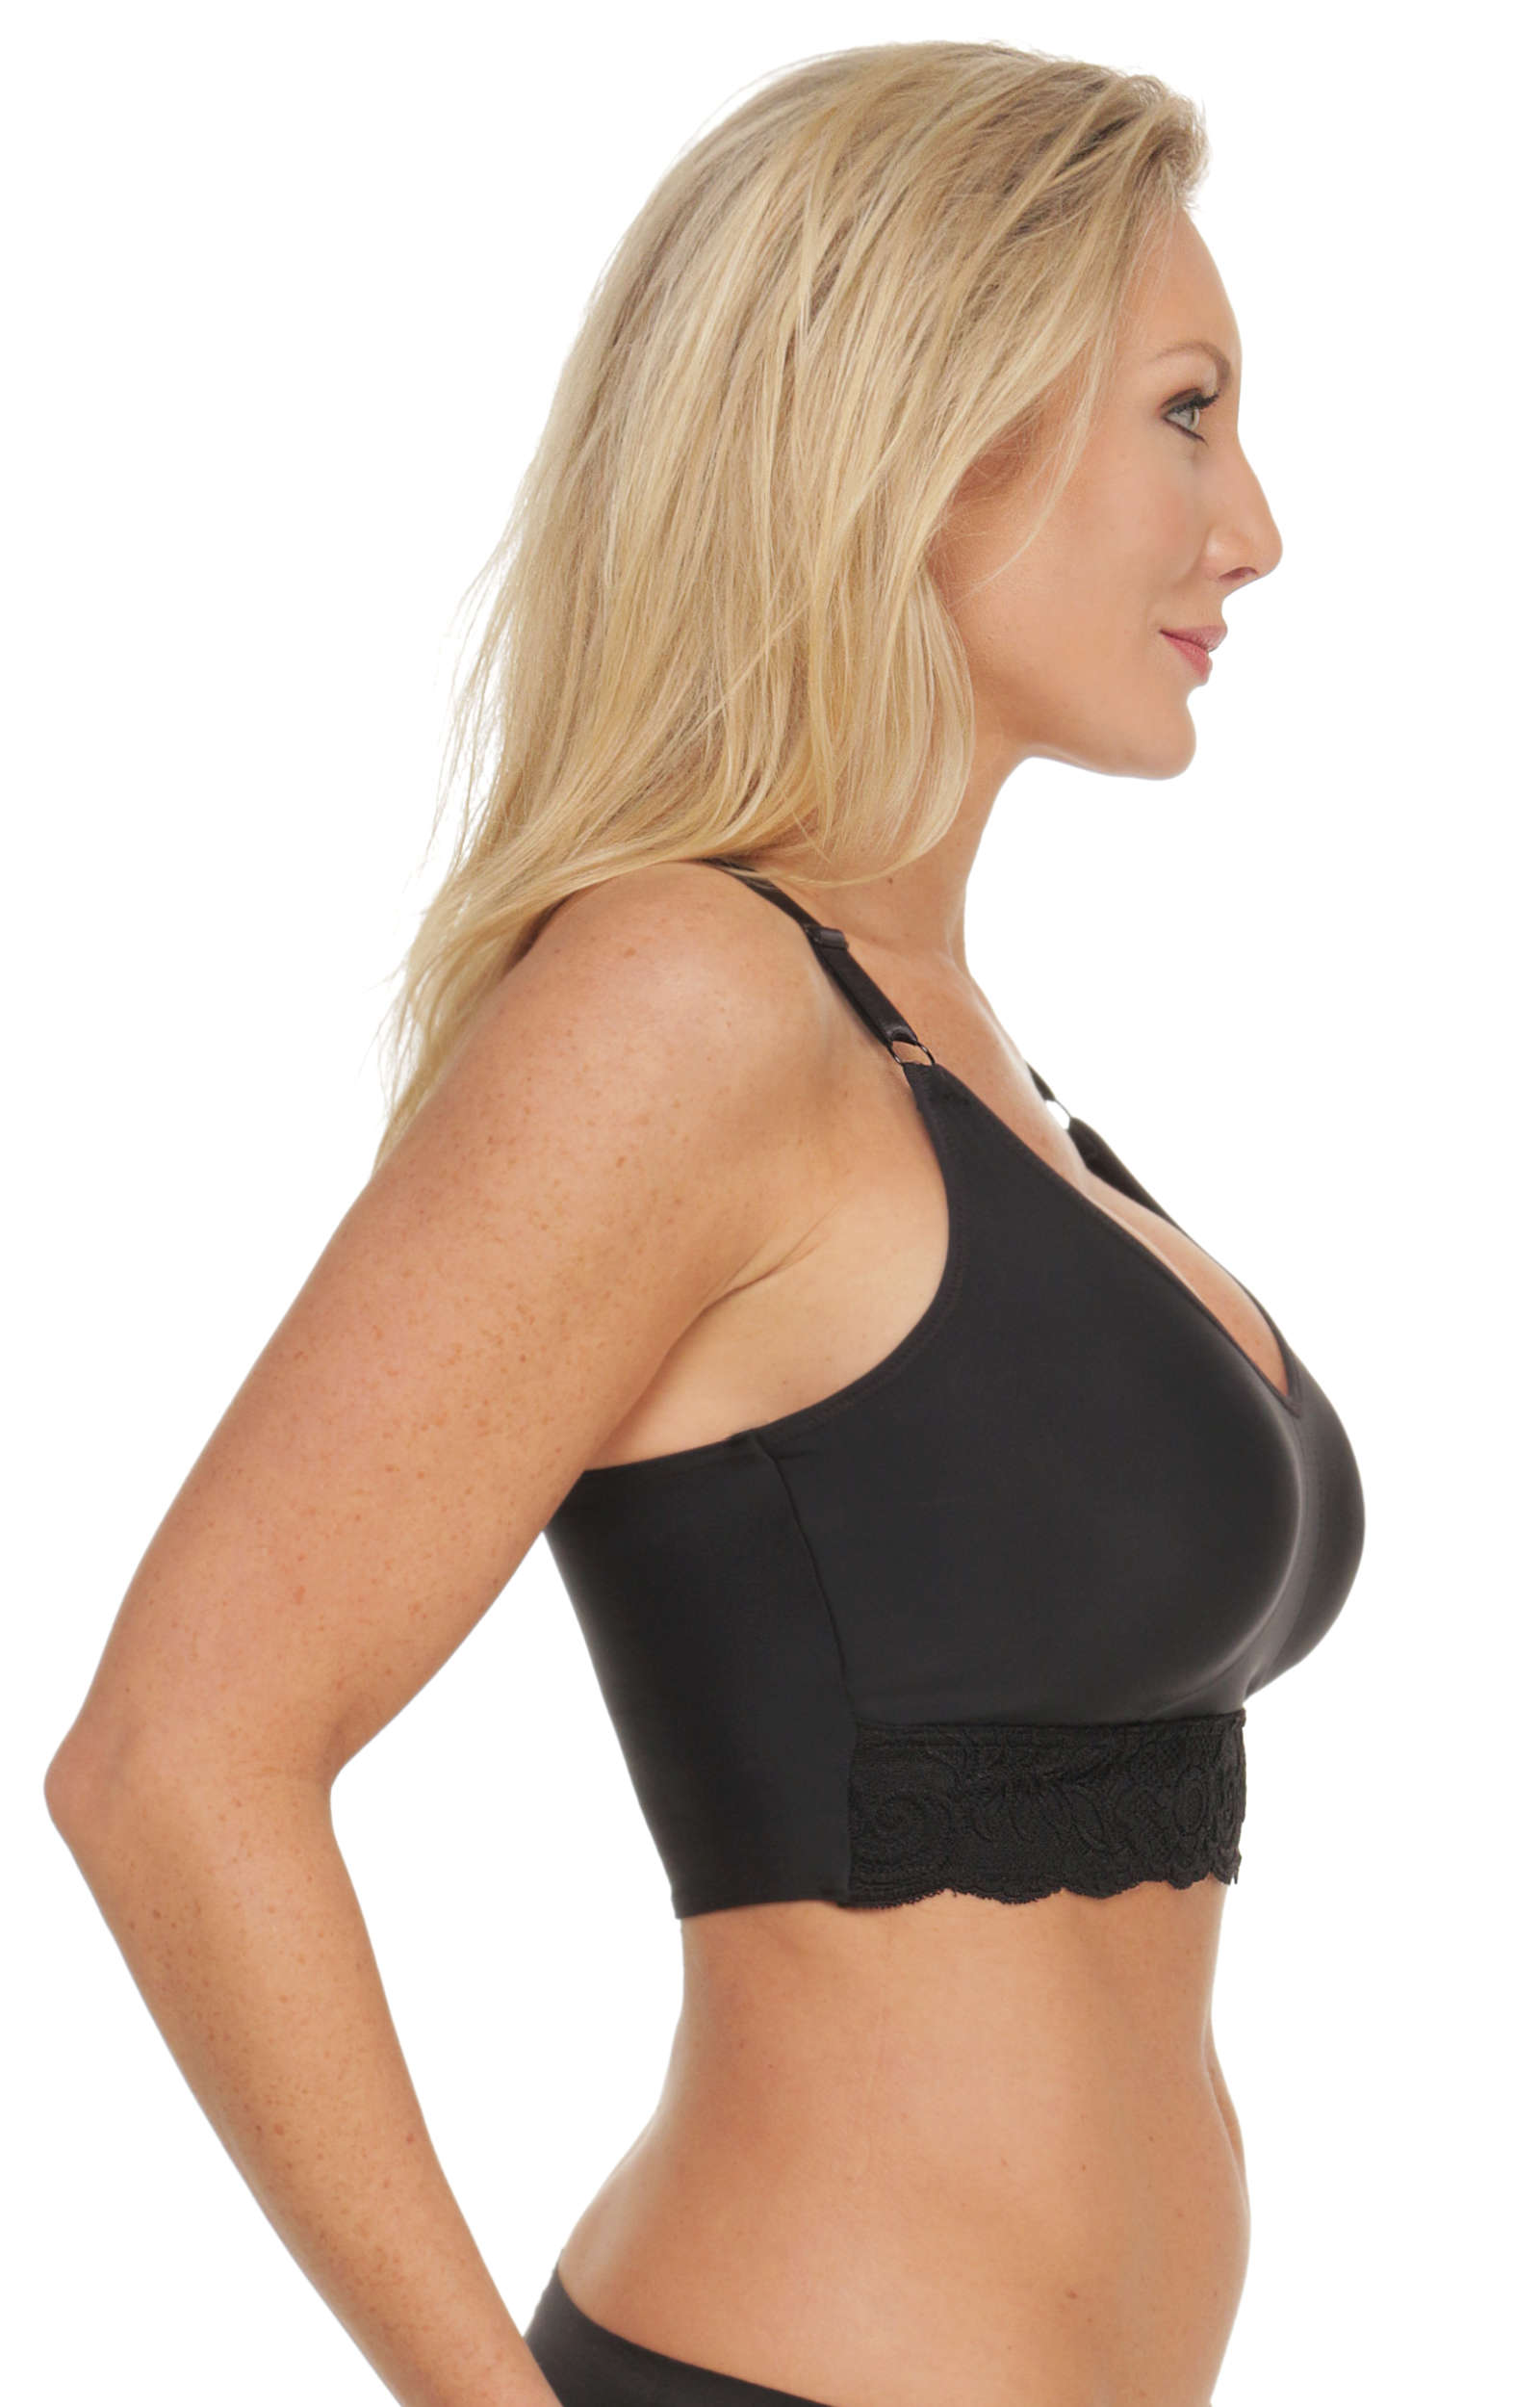 Best racerback bra for large breasts - Activewear manufacturer